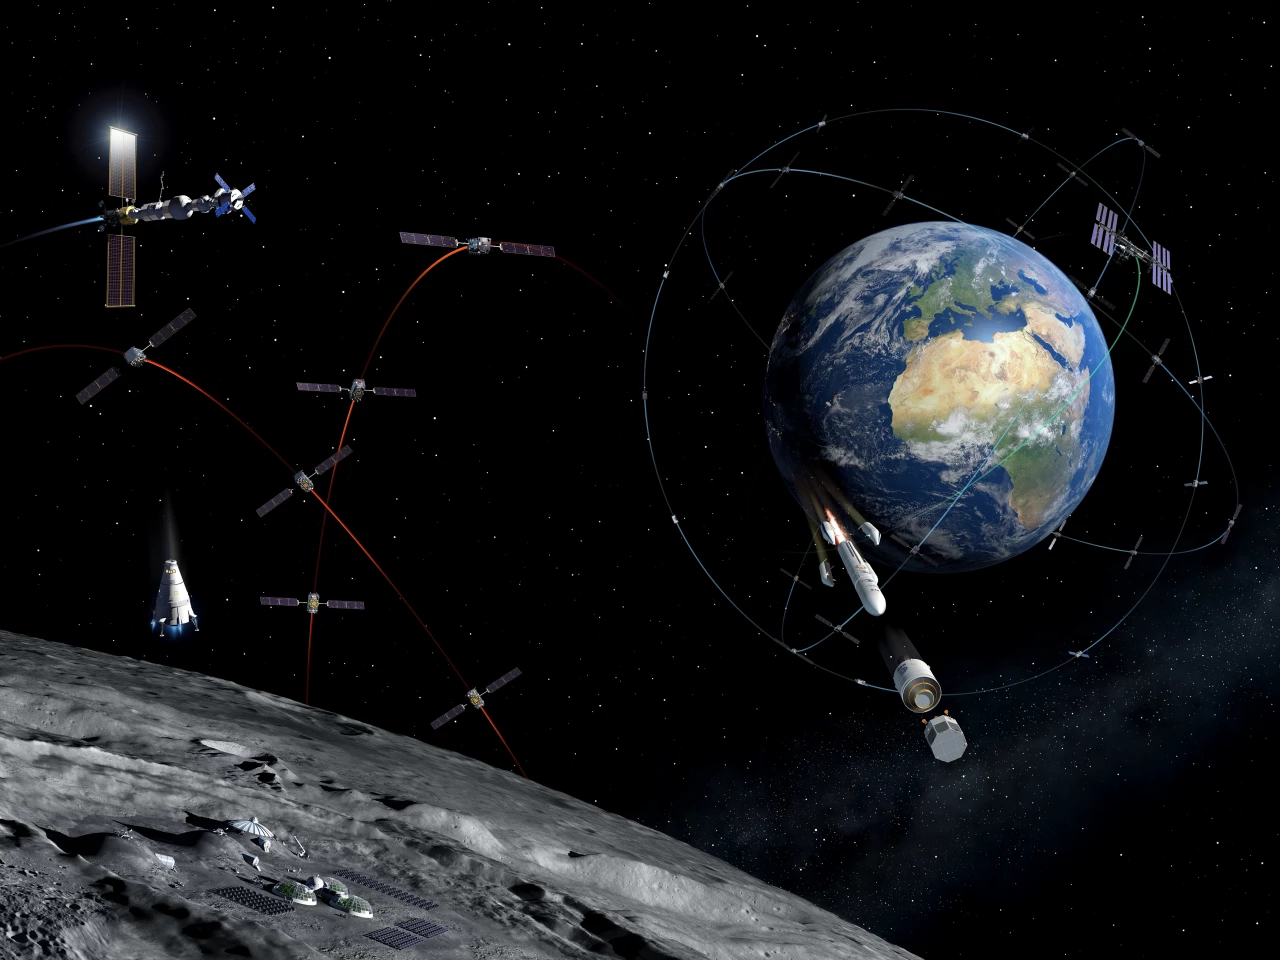 歐空局「探路者」將測試地球衛星導航信號在月球軌道上的覆蓋范圍